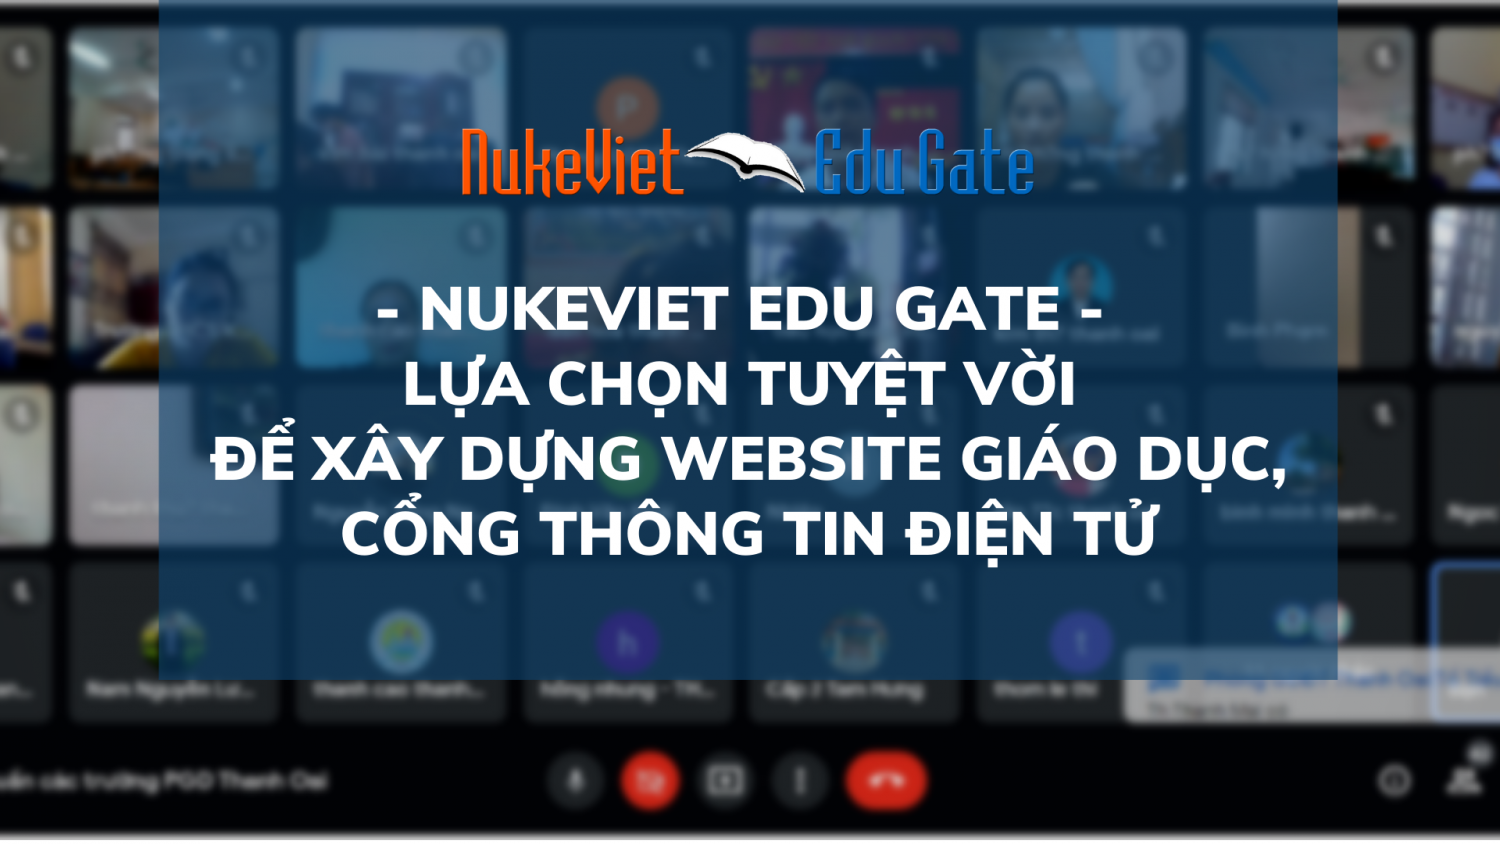 NUKEVIET EDU GATE LỰA CHỌN TUYỆT VỜI để xây dựng website giáo dục, CỔNG THÔNG TIN ĐIỆN TỬ